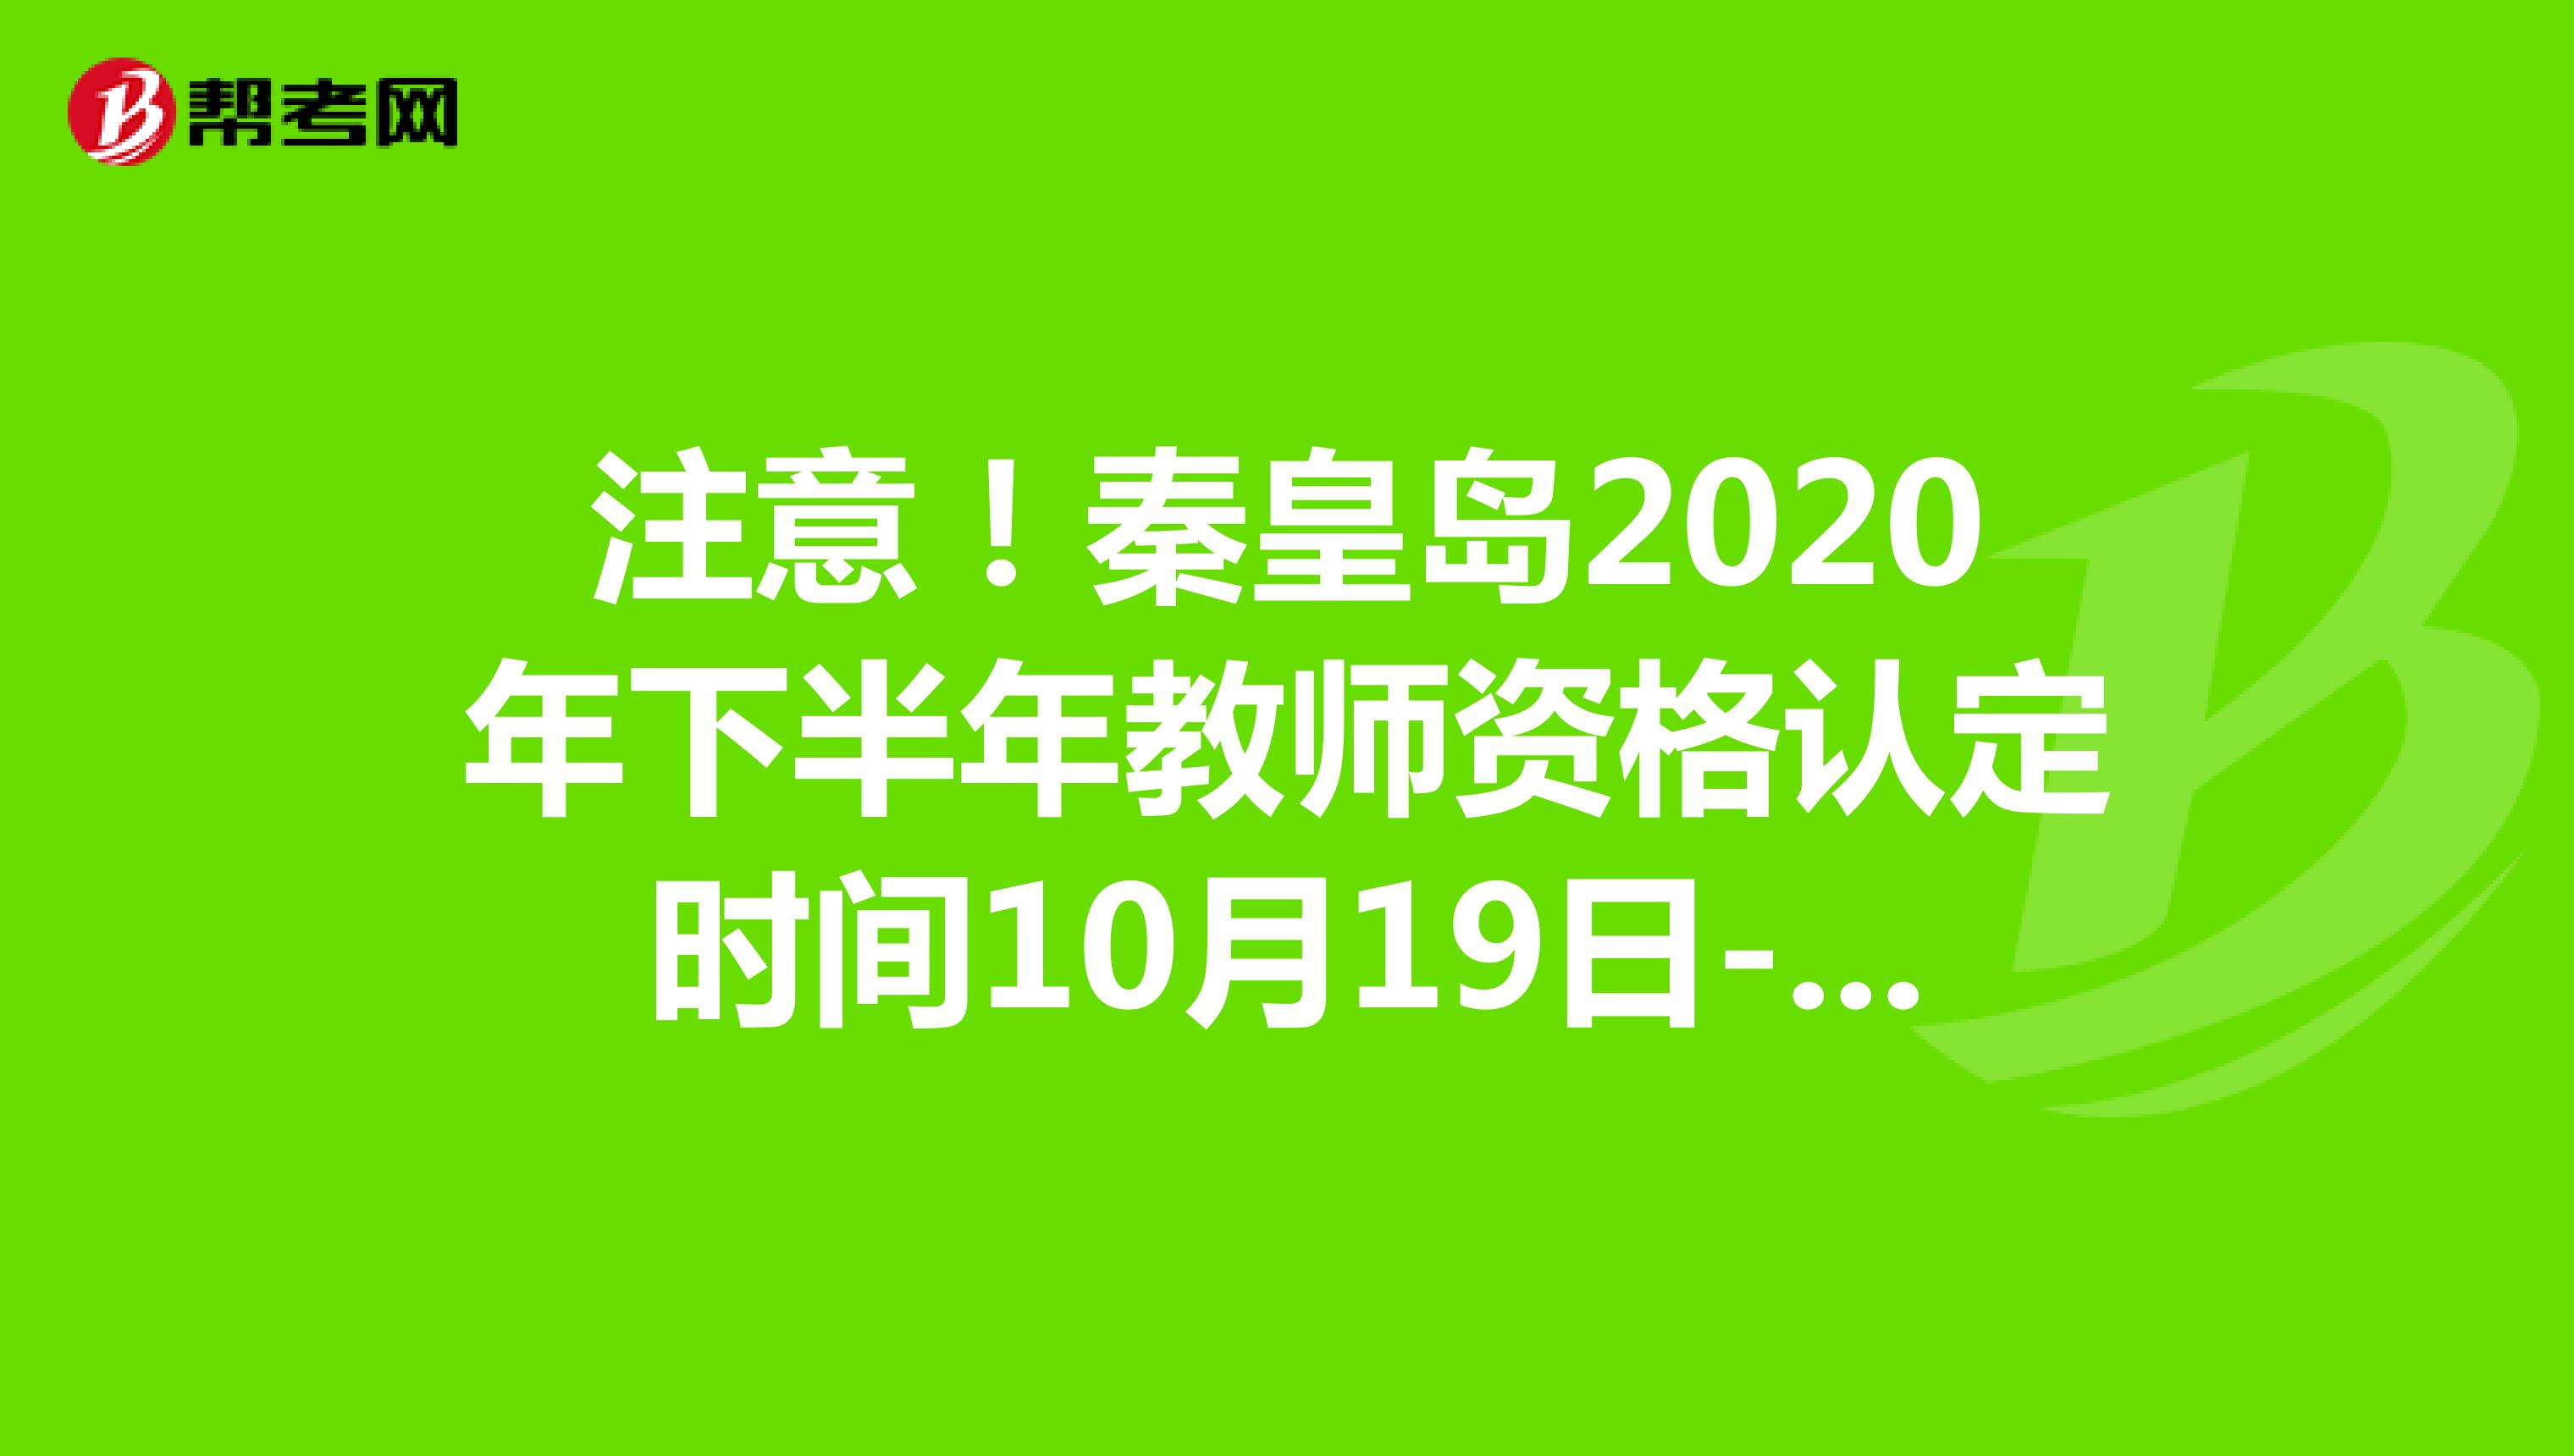 注意！秦皇岛2020年下半年教师资格认定时间10月19日-10月30日